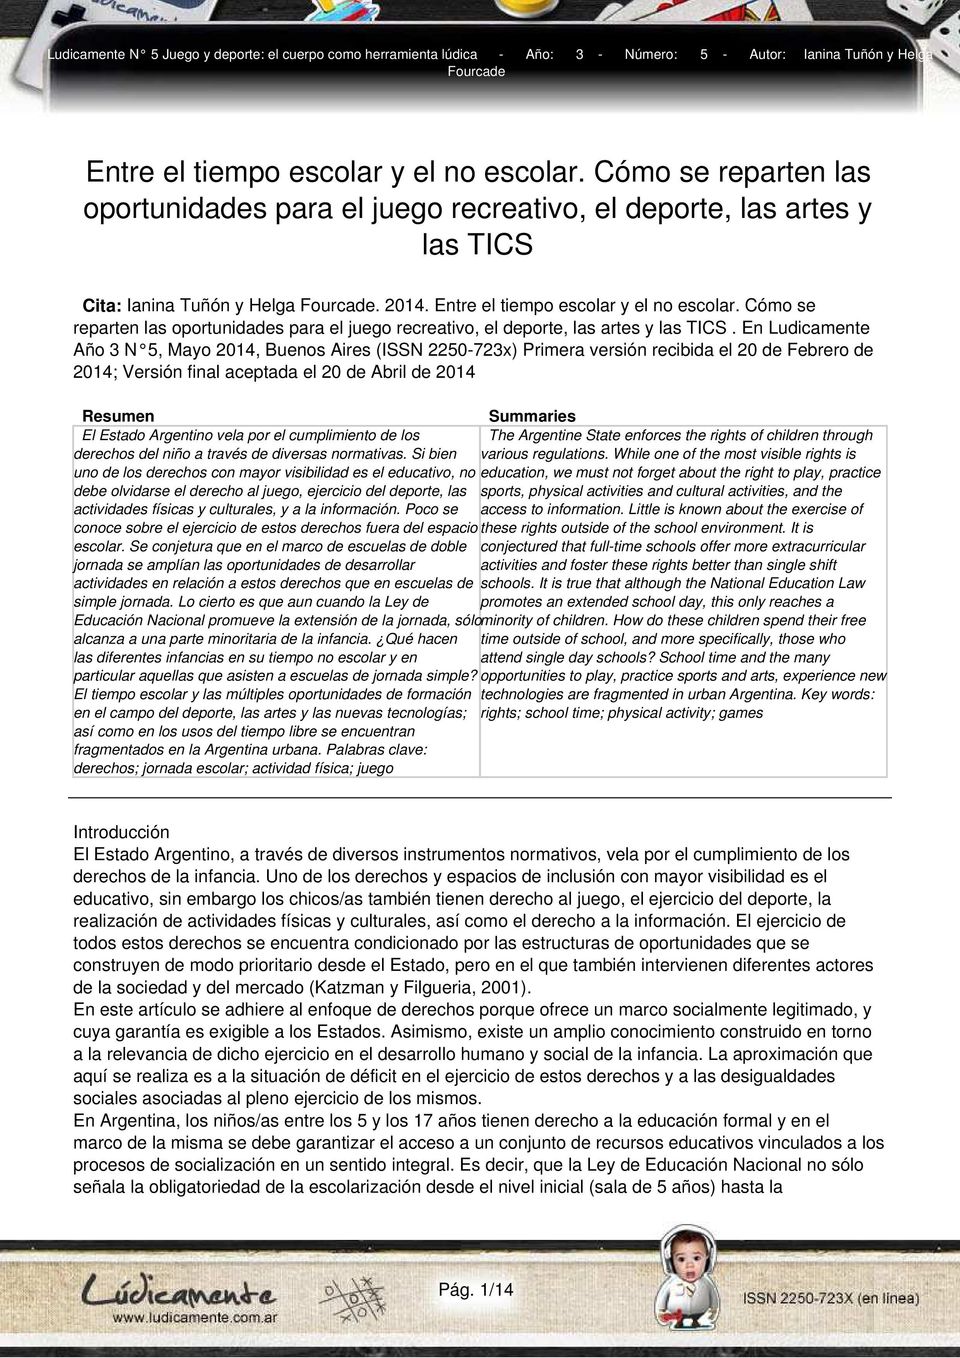 En Ludicamente Año 3 N 5, Mayo 2014, Buenos Aires (ISSN 2250-723x) Primera versión recibida el 20 de Febrero de 2014; Versión final aceptada el 20 de Abril de 2014 Resumen Summaries El Estado